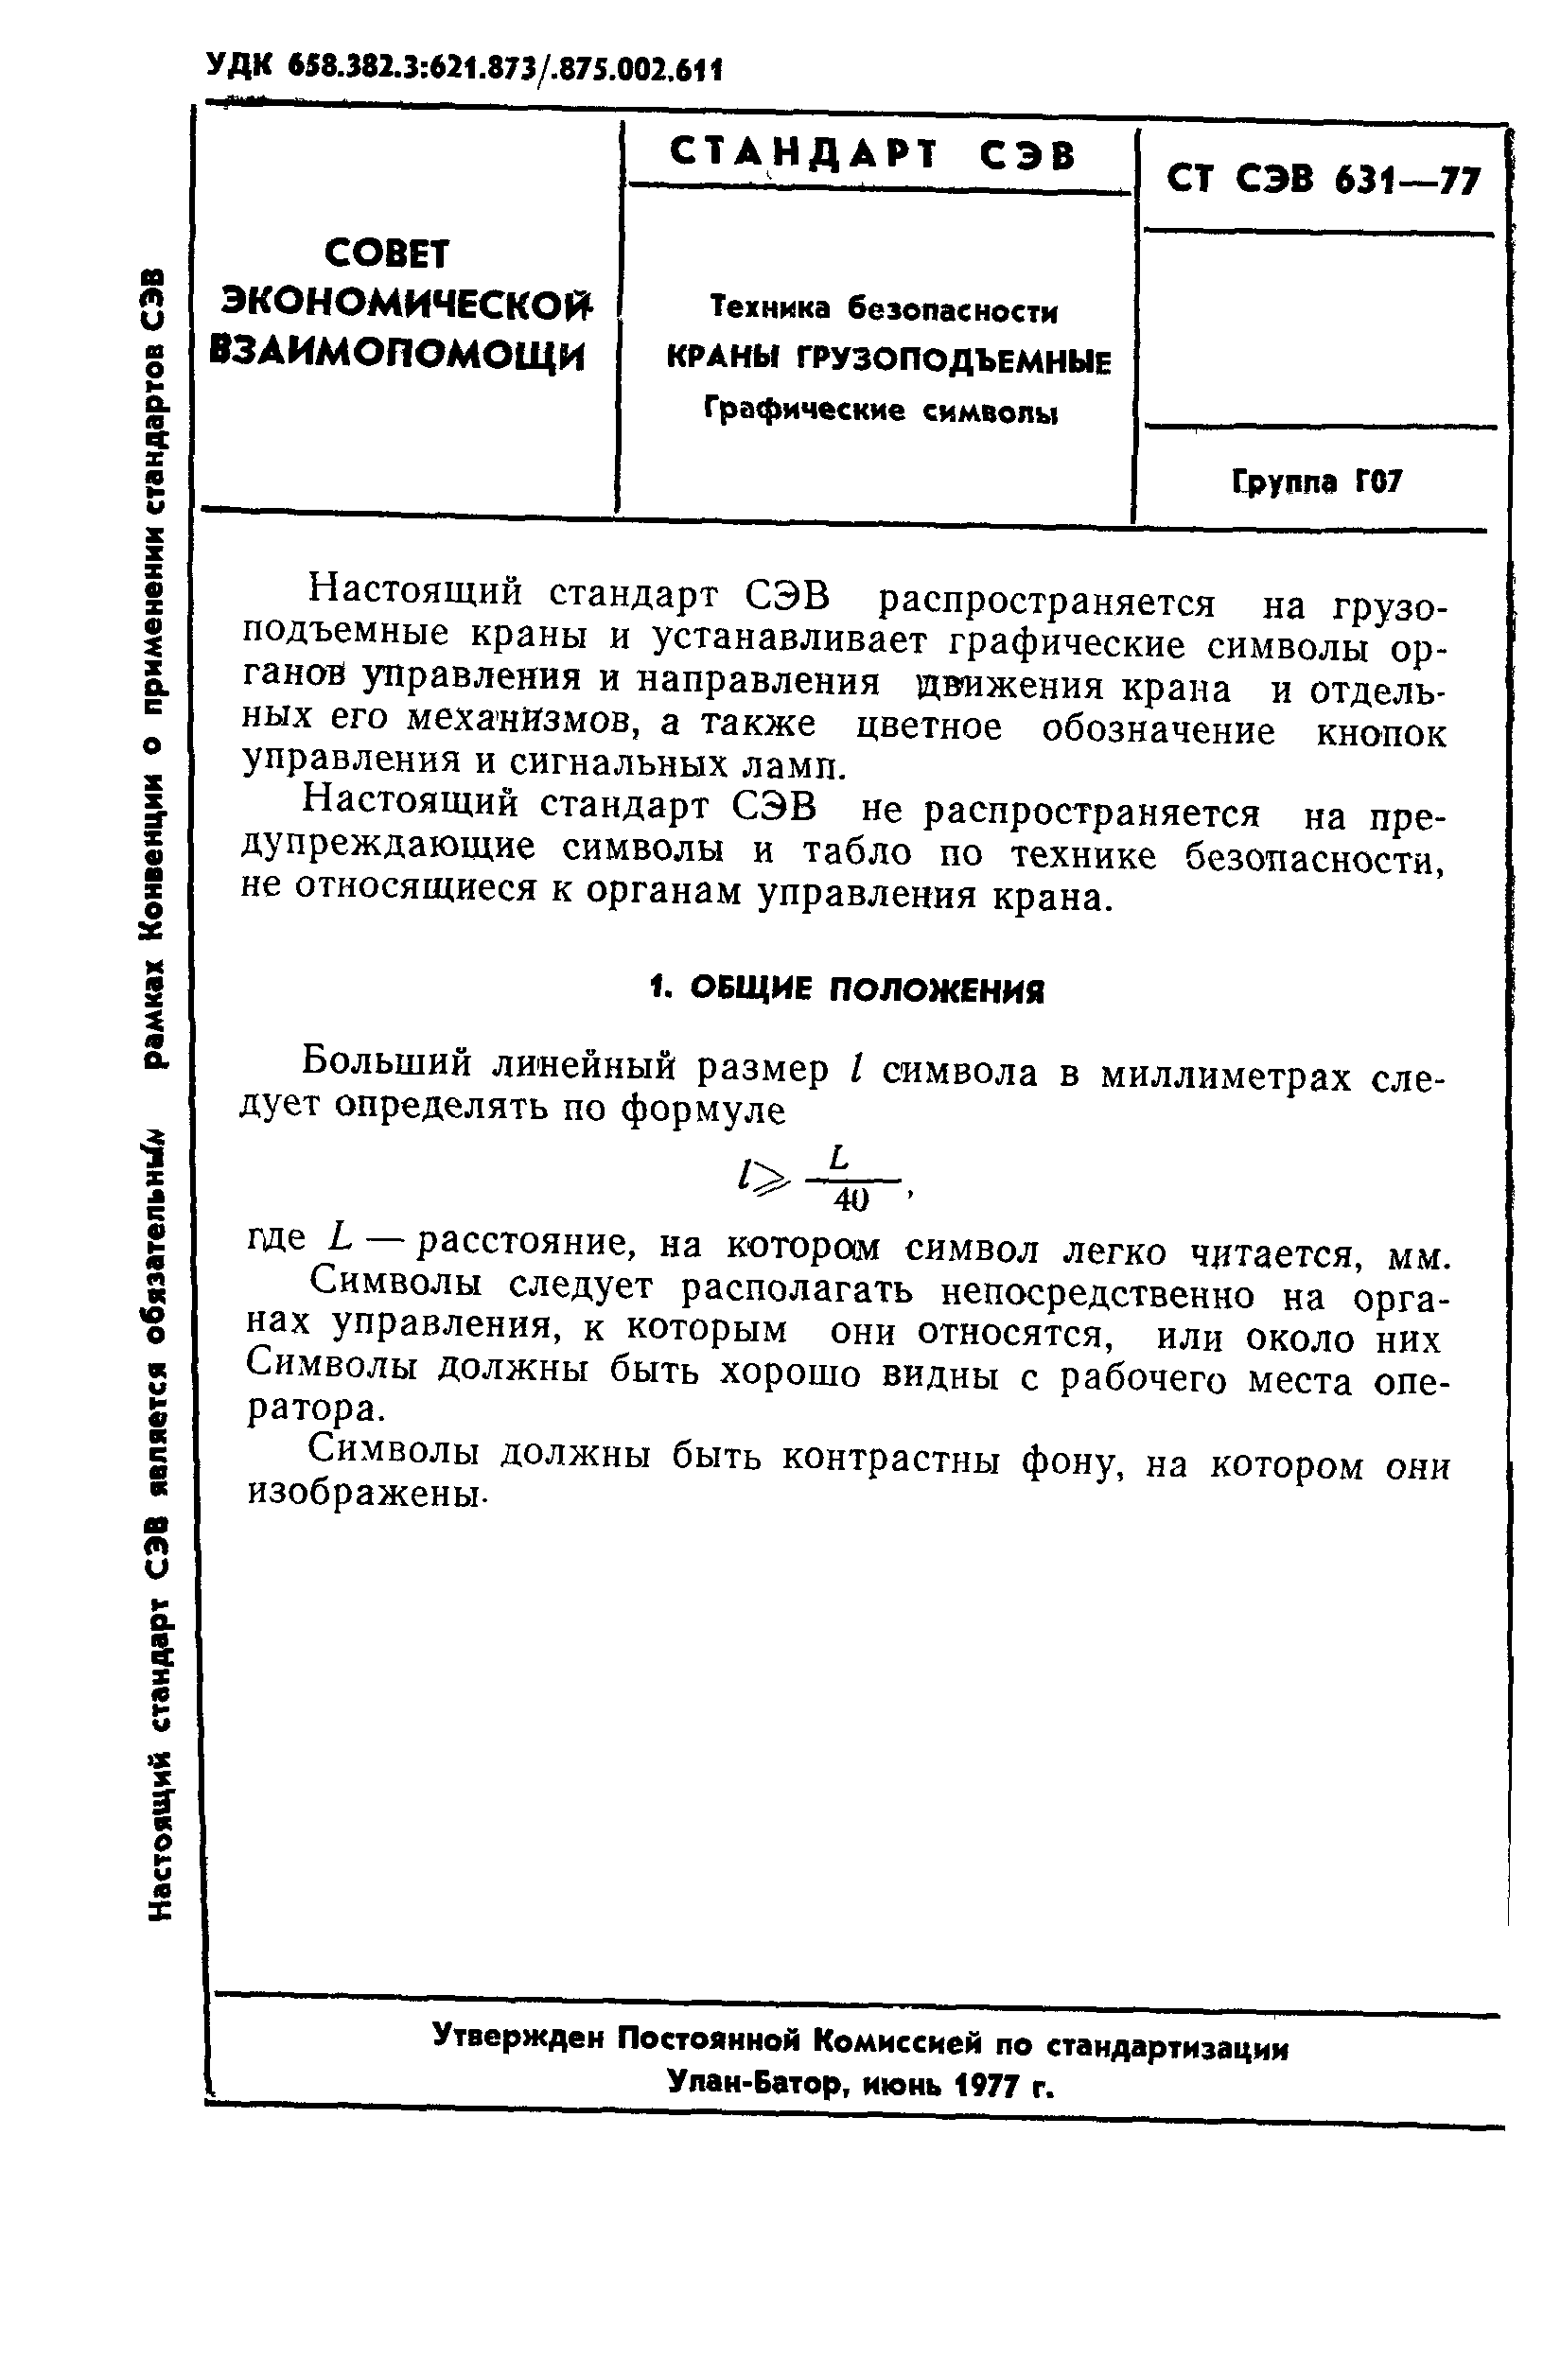 СТ СЭВ 631-77